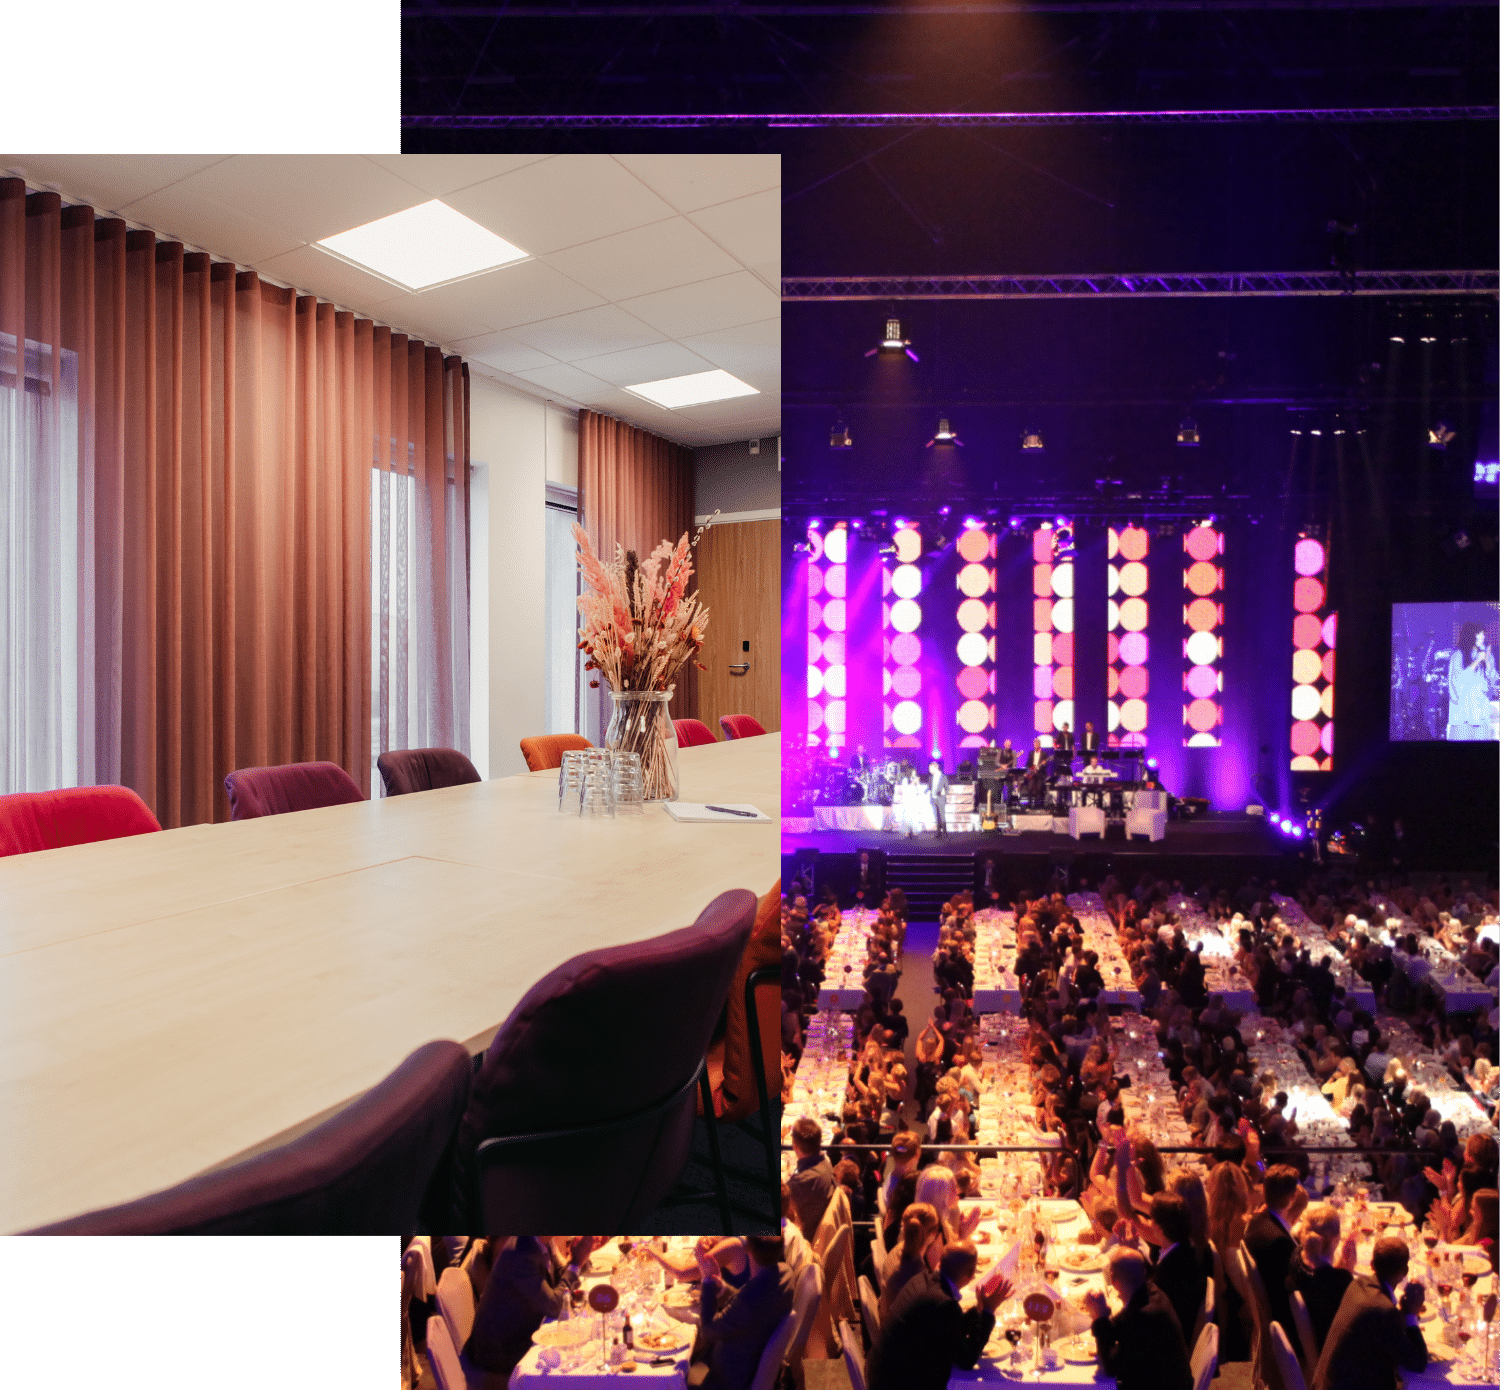 Två olika konferenslokaler. En mindre med träbord och lila stolar. En större med dukade långbord och en scen med belysning.